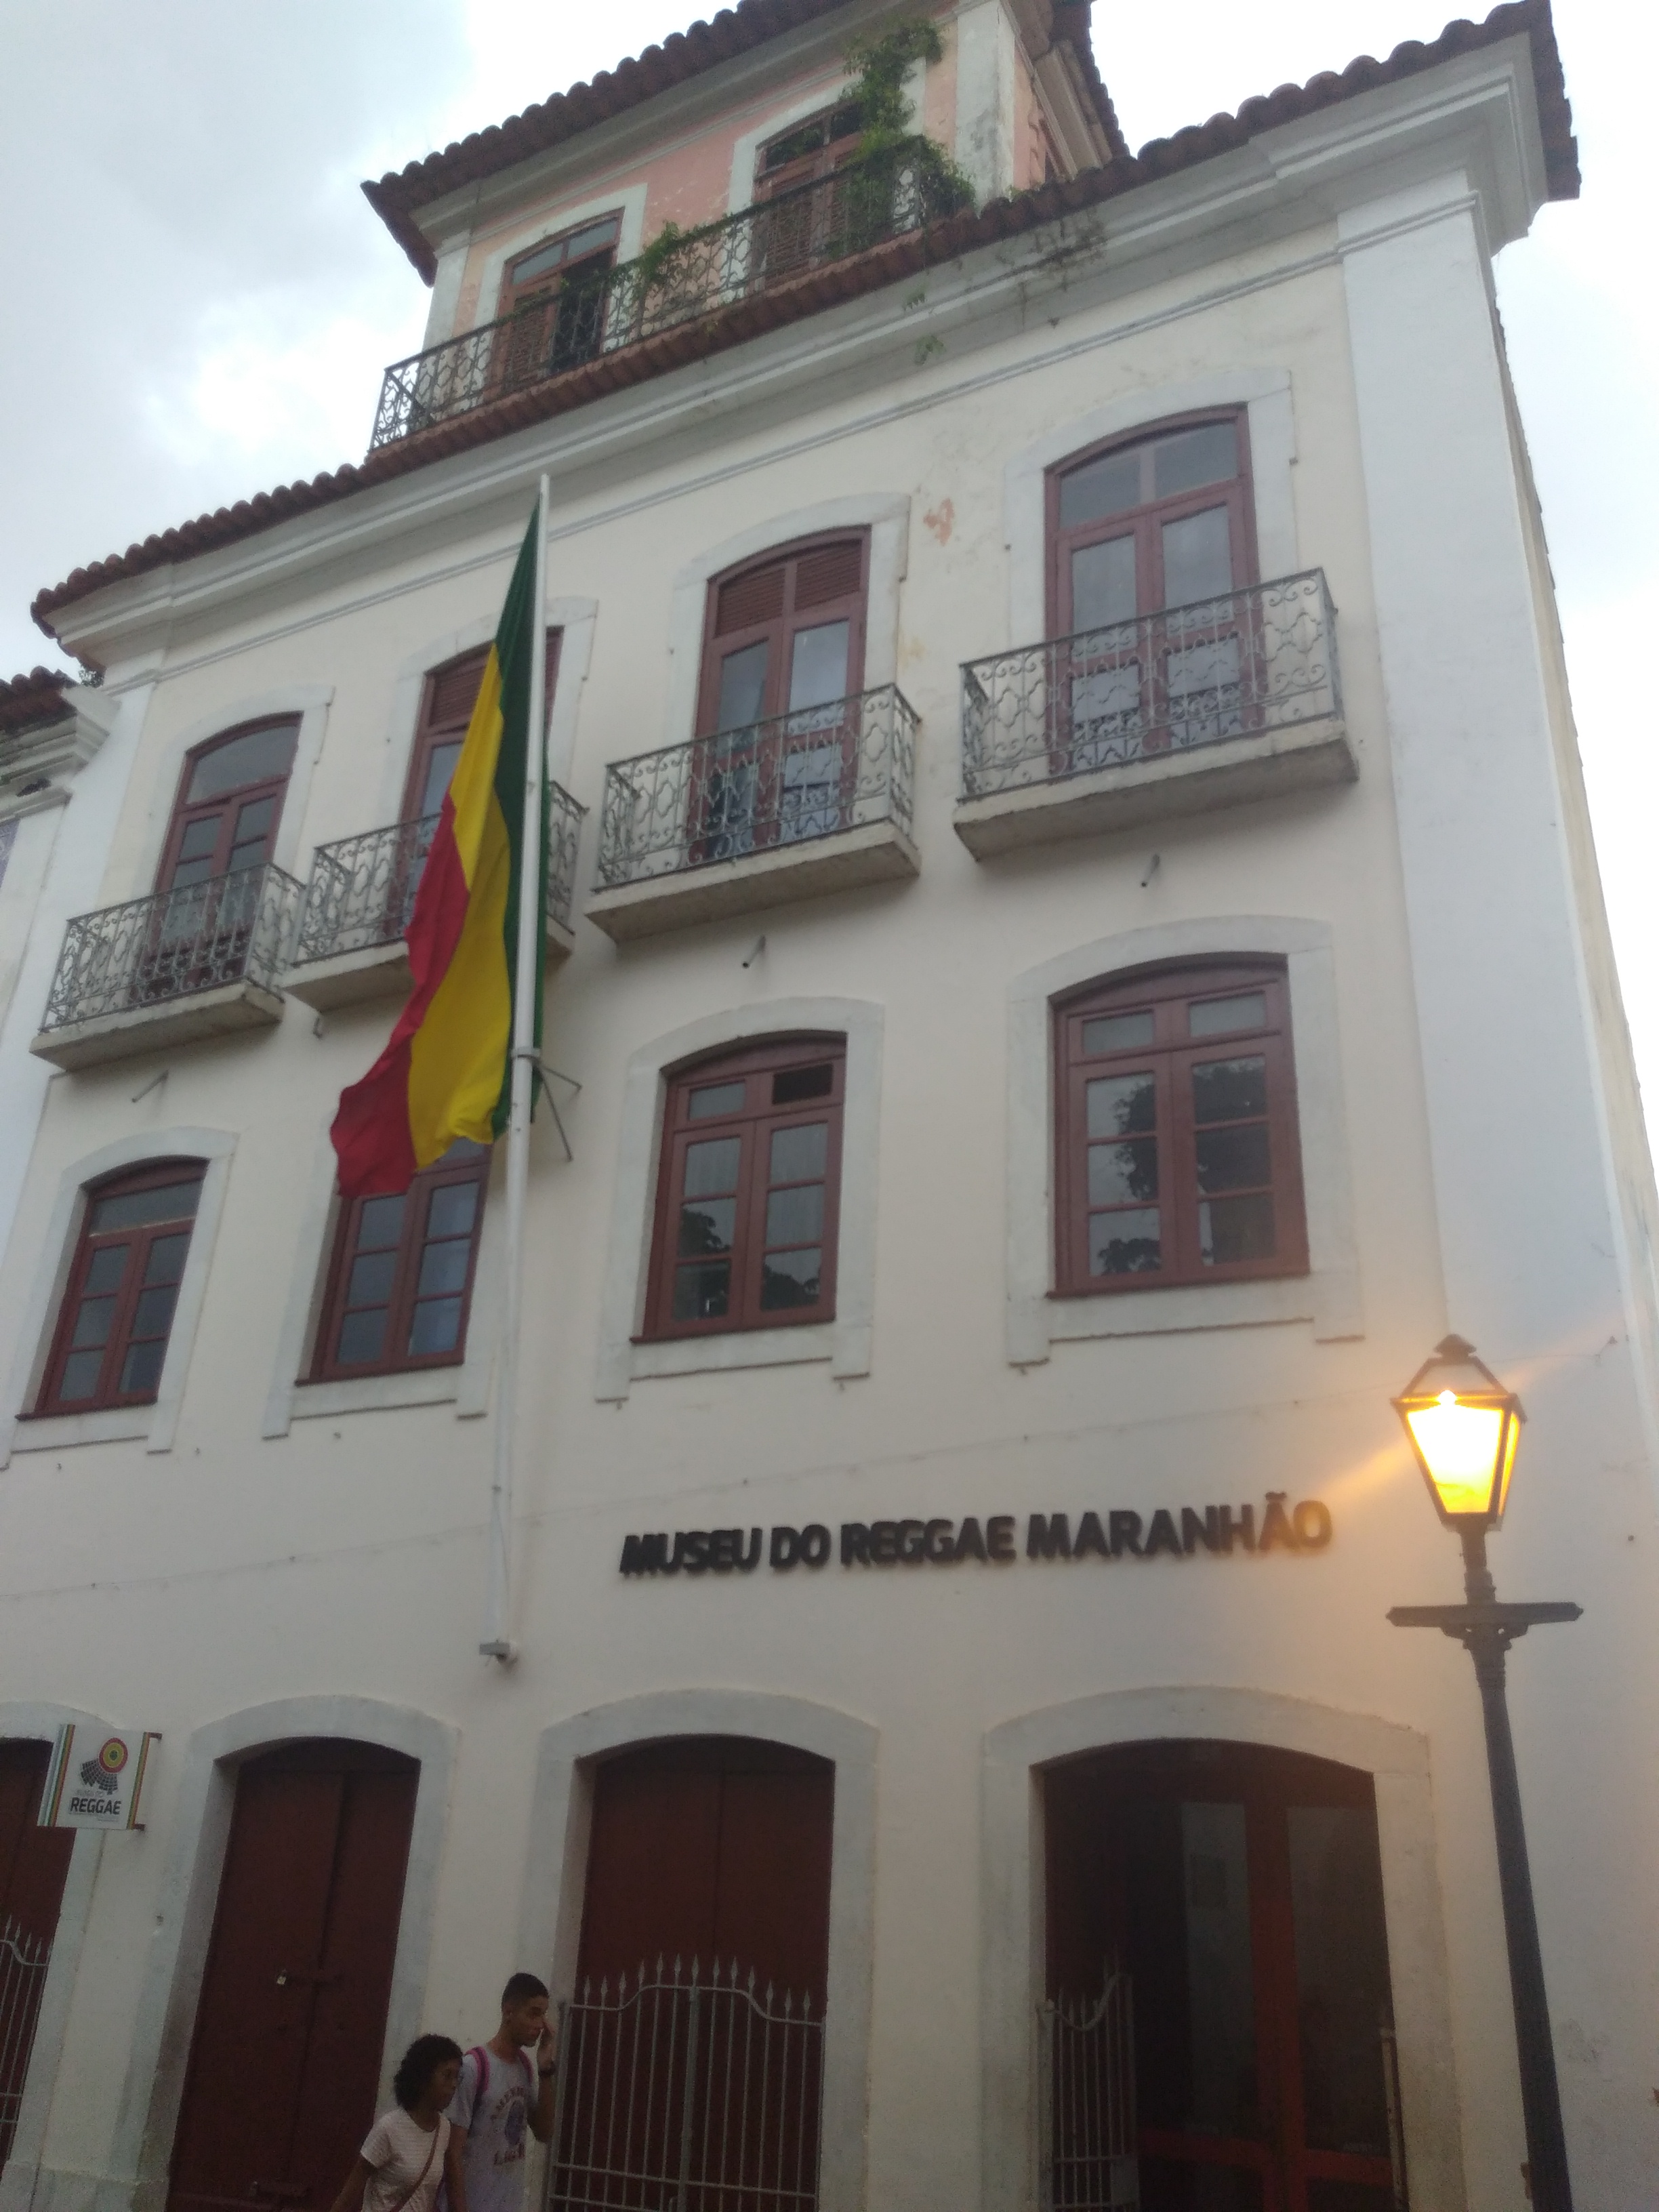 Reggae Maranhao Museum Wikipedia